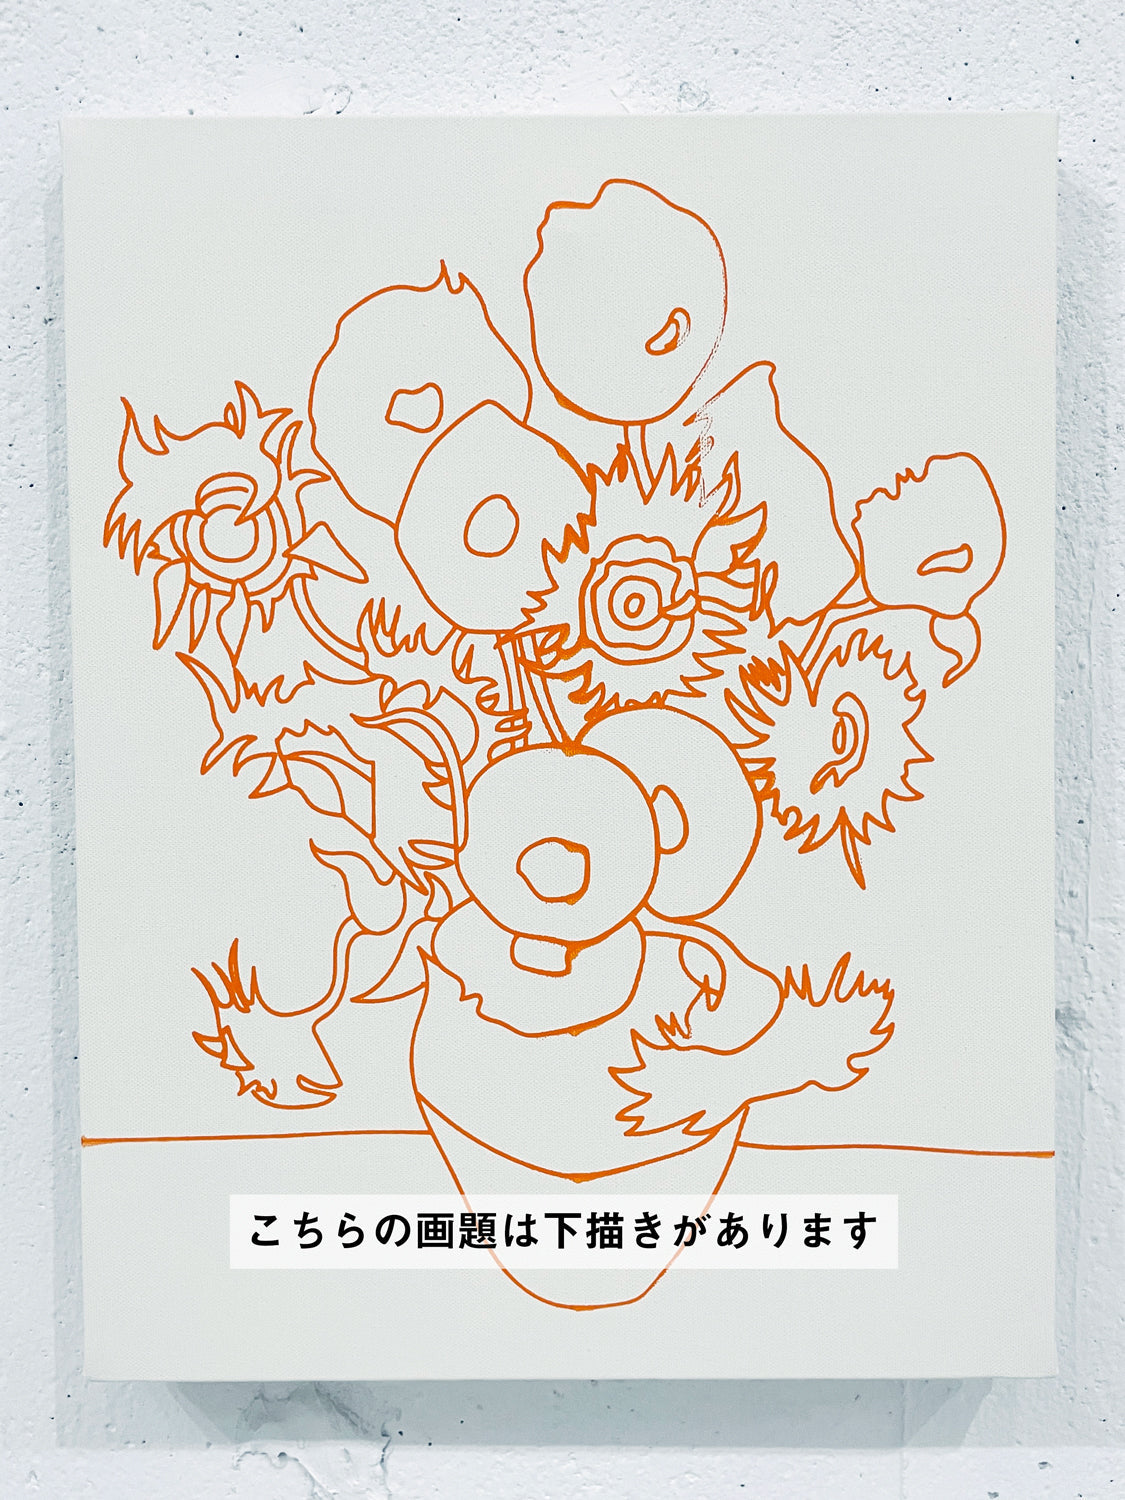 05月04日 (土祝) 10:00-13:00 | 日本橋 | フィンセント・ファン・ゴッホ | ひまわり *下描きあり (Sunflower by Vincent van Gogh *canvas drafted at Nihon-bashi)